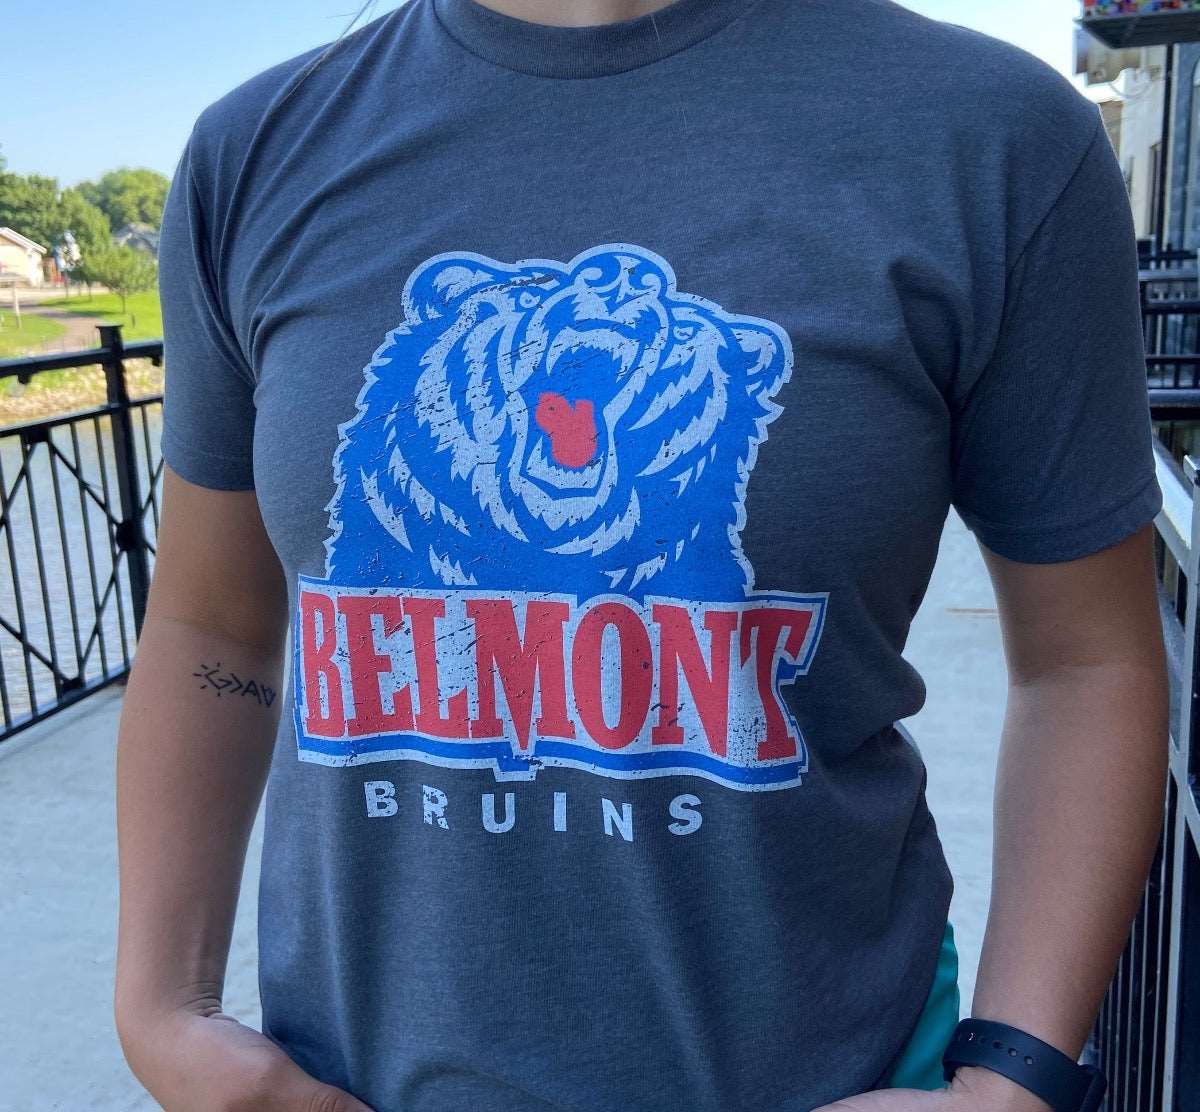 Belmont Bruins NCAA softball custom jersey